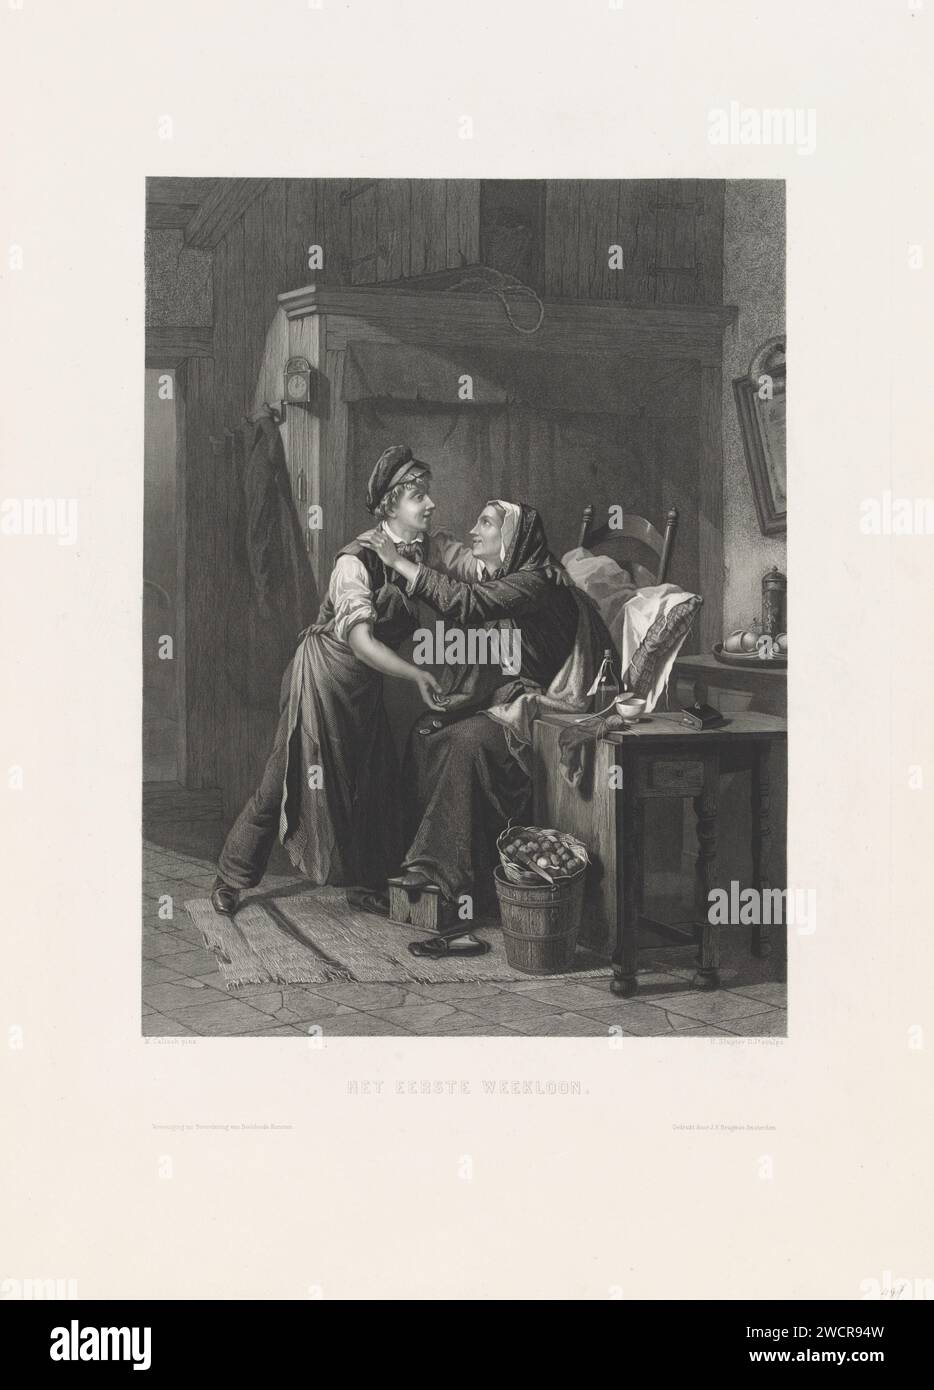 Un jeune homme montre une main pleine de pièces à une femme assise, Hendrik D. Jzn Sluyter, d'après Moritz Calisch, 1865 - 1879 estampe dans un intérieur paysan, une femme âgée est assise dans une chaise, avec un oreiller dans le dos et son pied sur un ragoût. Elle embrasse un jeune homme qui tient quelques pièces dans sa main et qui tombe sur ses genoux. Amsterdam gravure de papier / gravure de pièce. intérieur de la maison. poêle à pied. jeunesse, adolescent. Bras tendu vers l'avant - AA - les deux bras ou les mains. vieille femme Banque D'Images